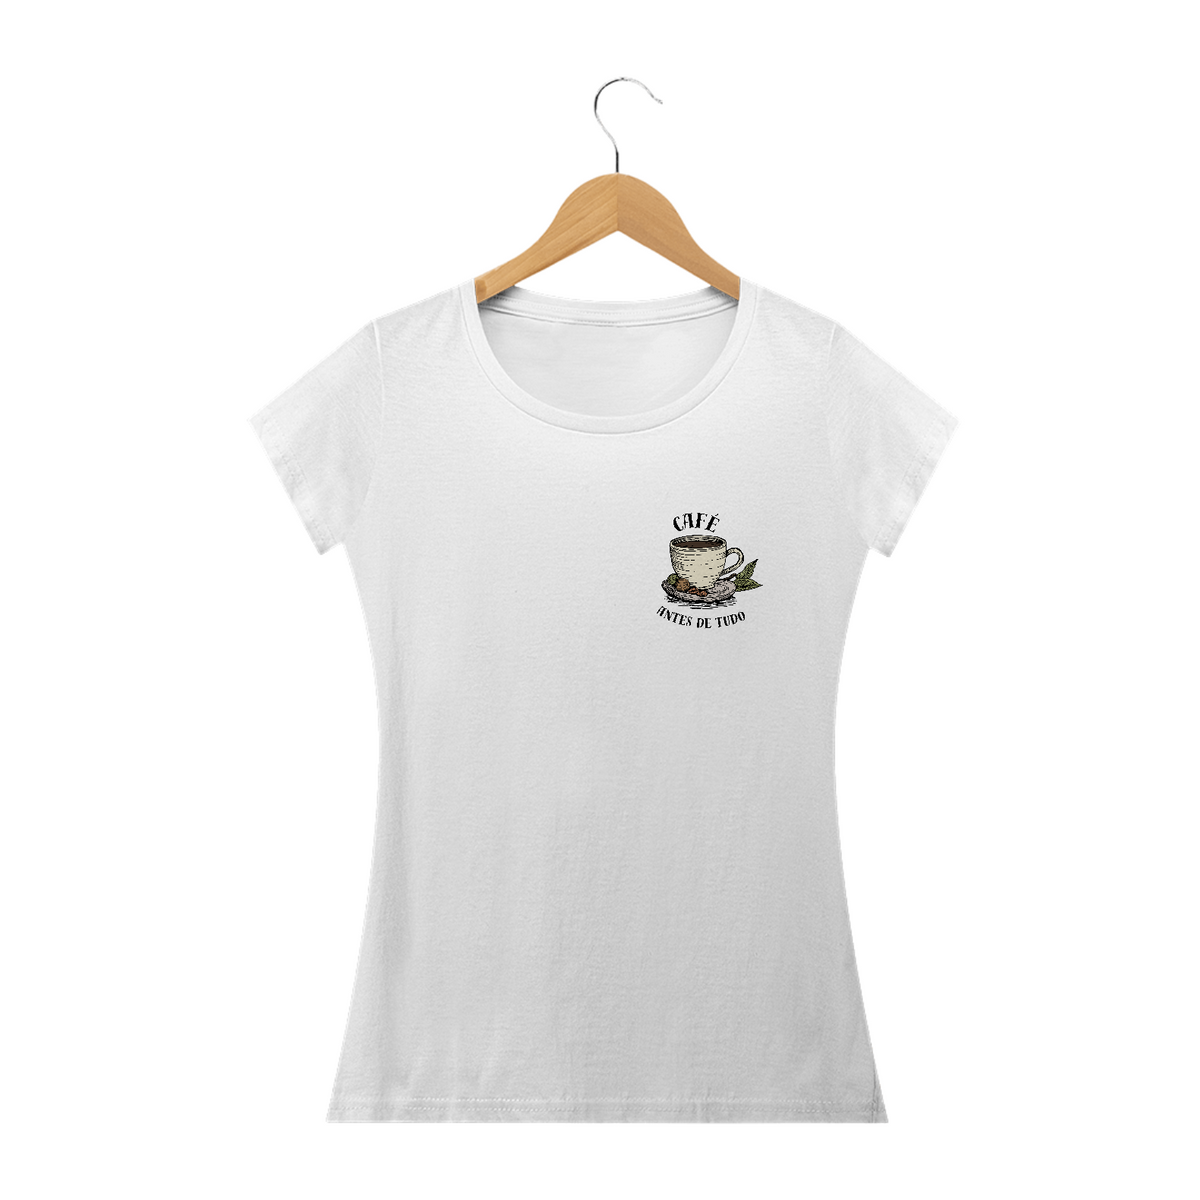 Nome do produto: Camiseta feminina café antes de tudo